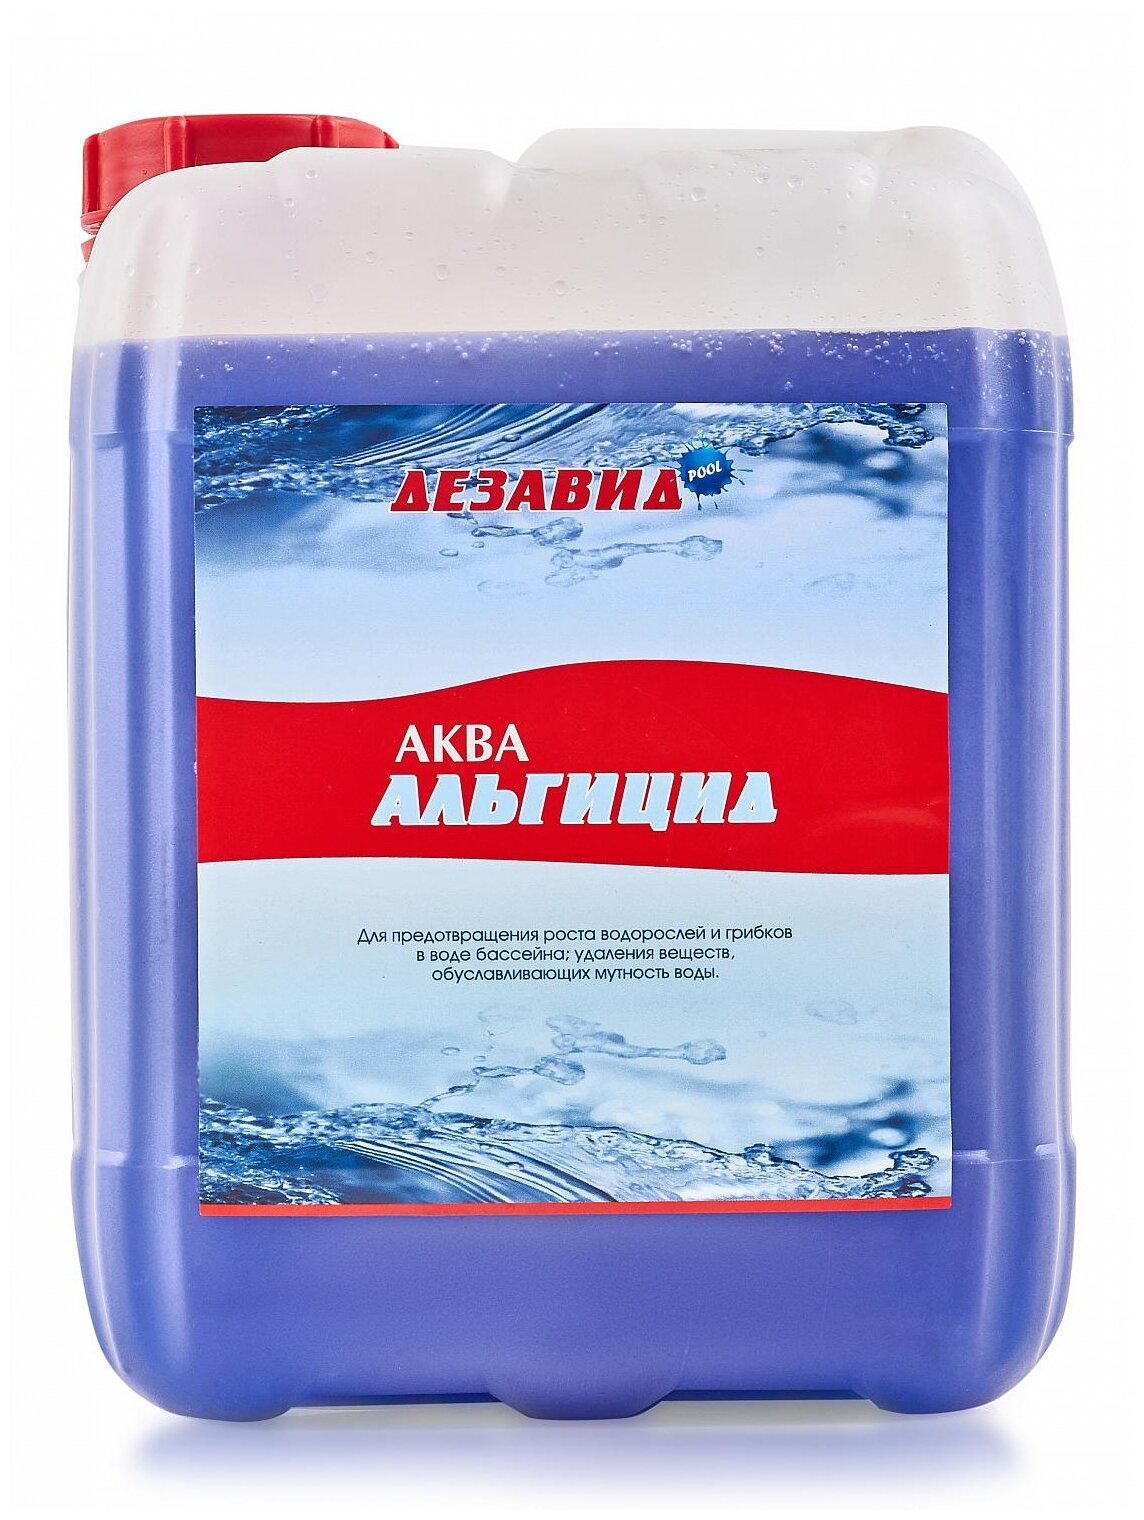 Средство для бассейна Аква-альгицид 5 литров